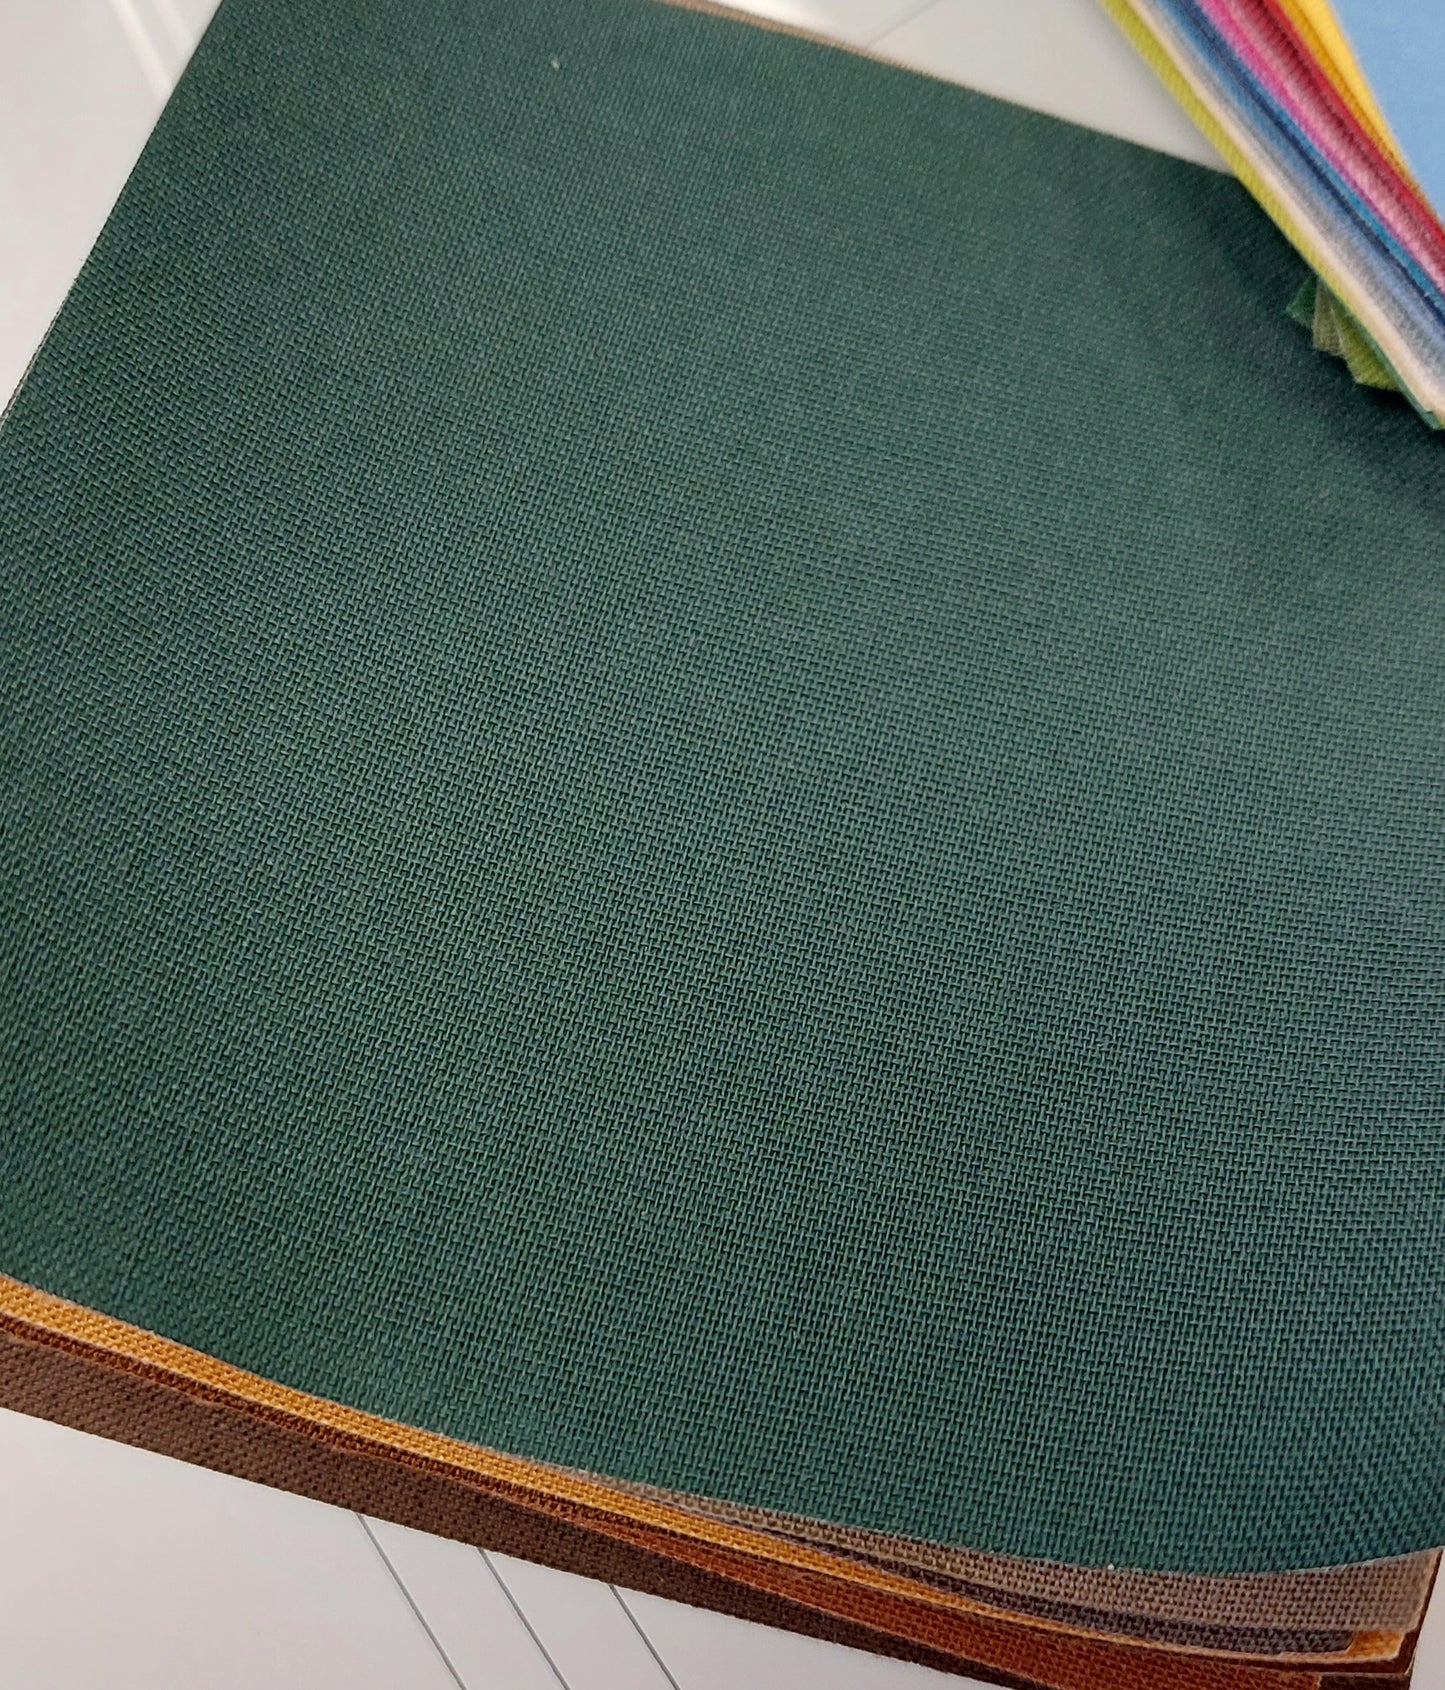 Bookbinding linen